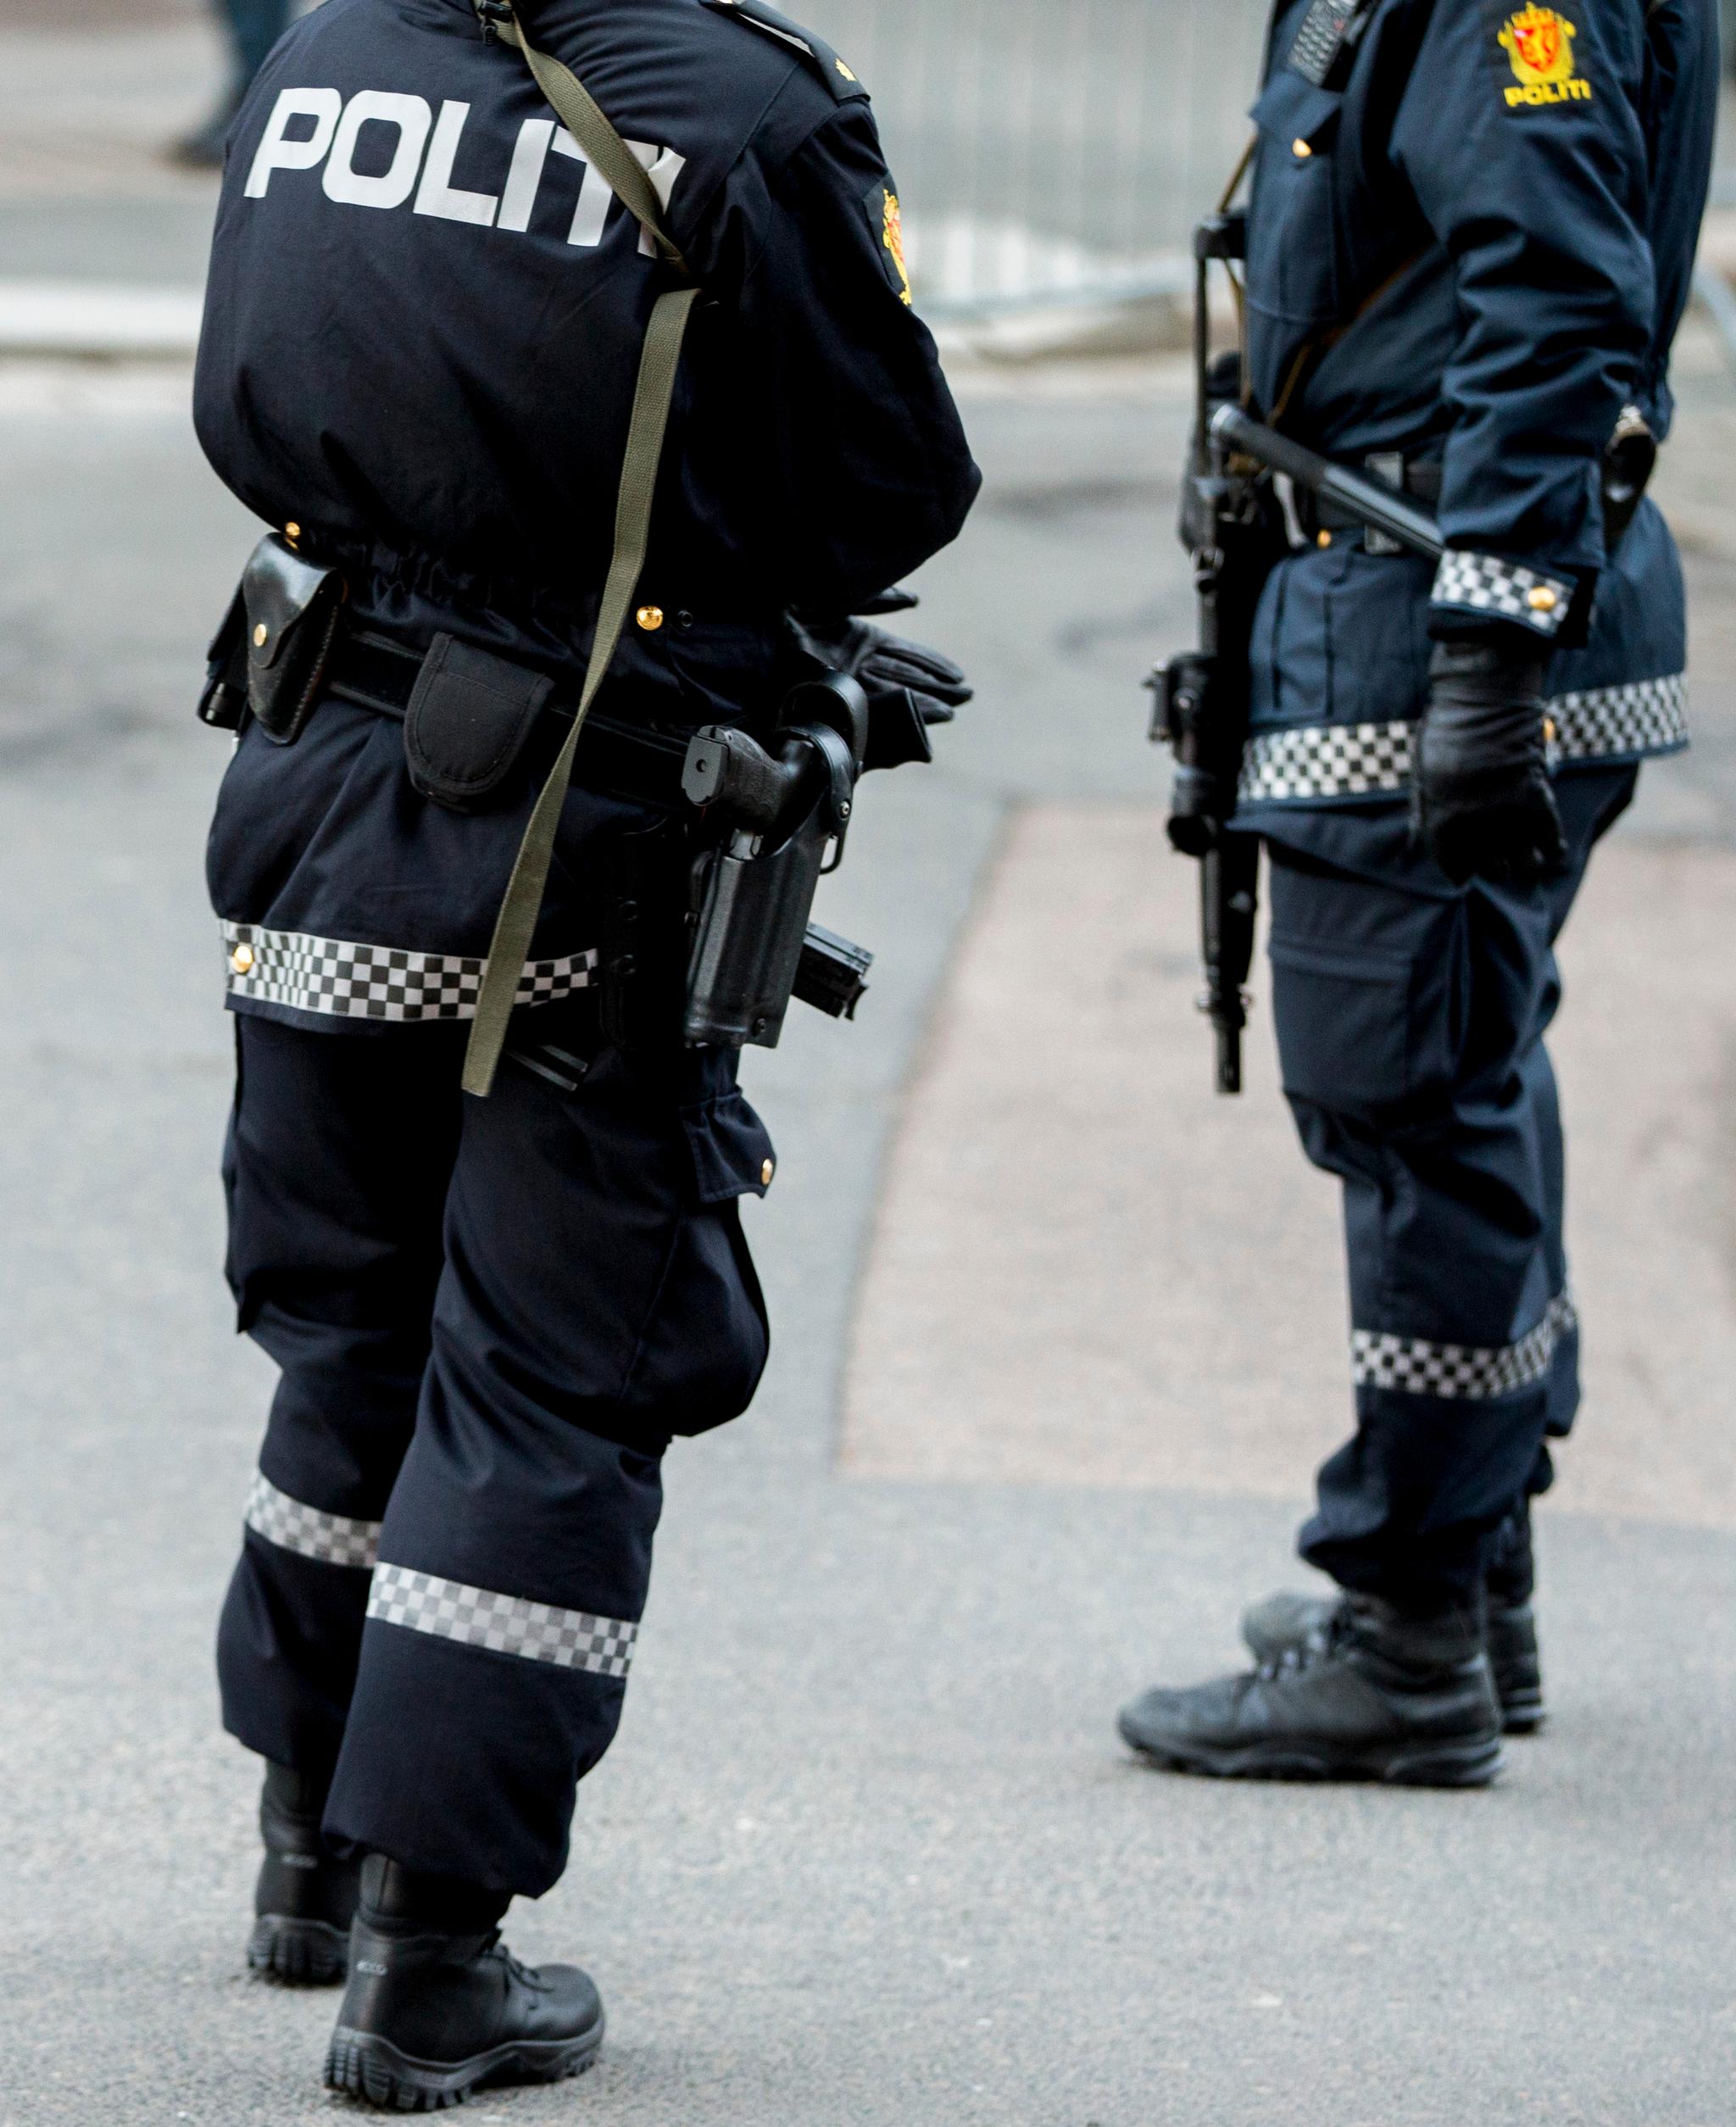 Flere måneder etter den midlertidige bevæpningen av politiet er avsluttet, sier utvalget at det fortsatt er permanent bevæpnede patruljer i Oslo. Bildet er fra 2015.